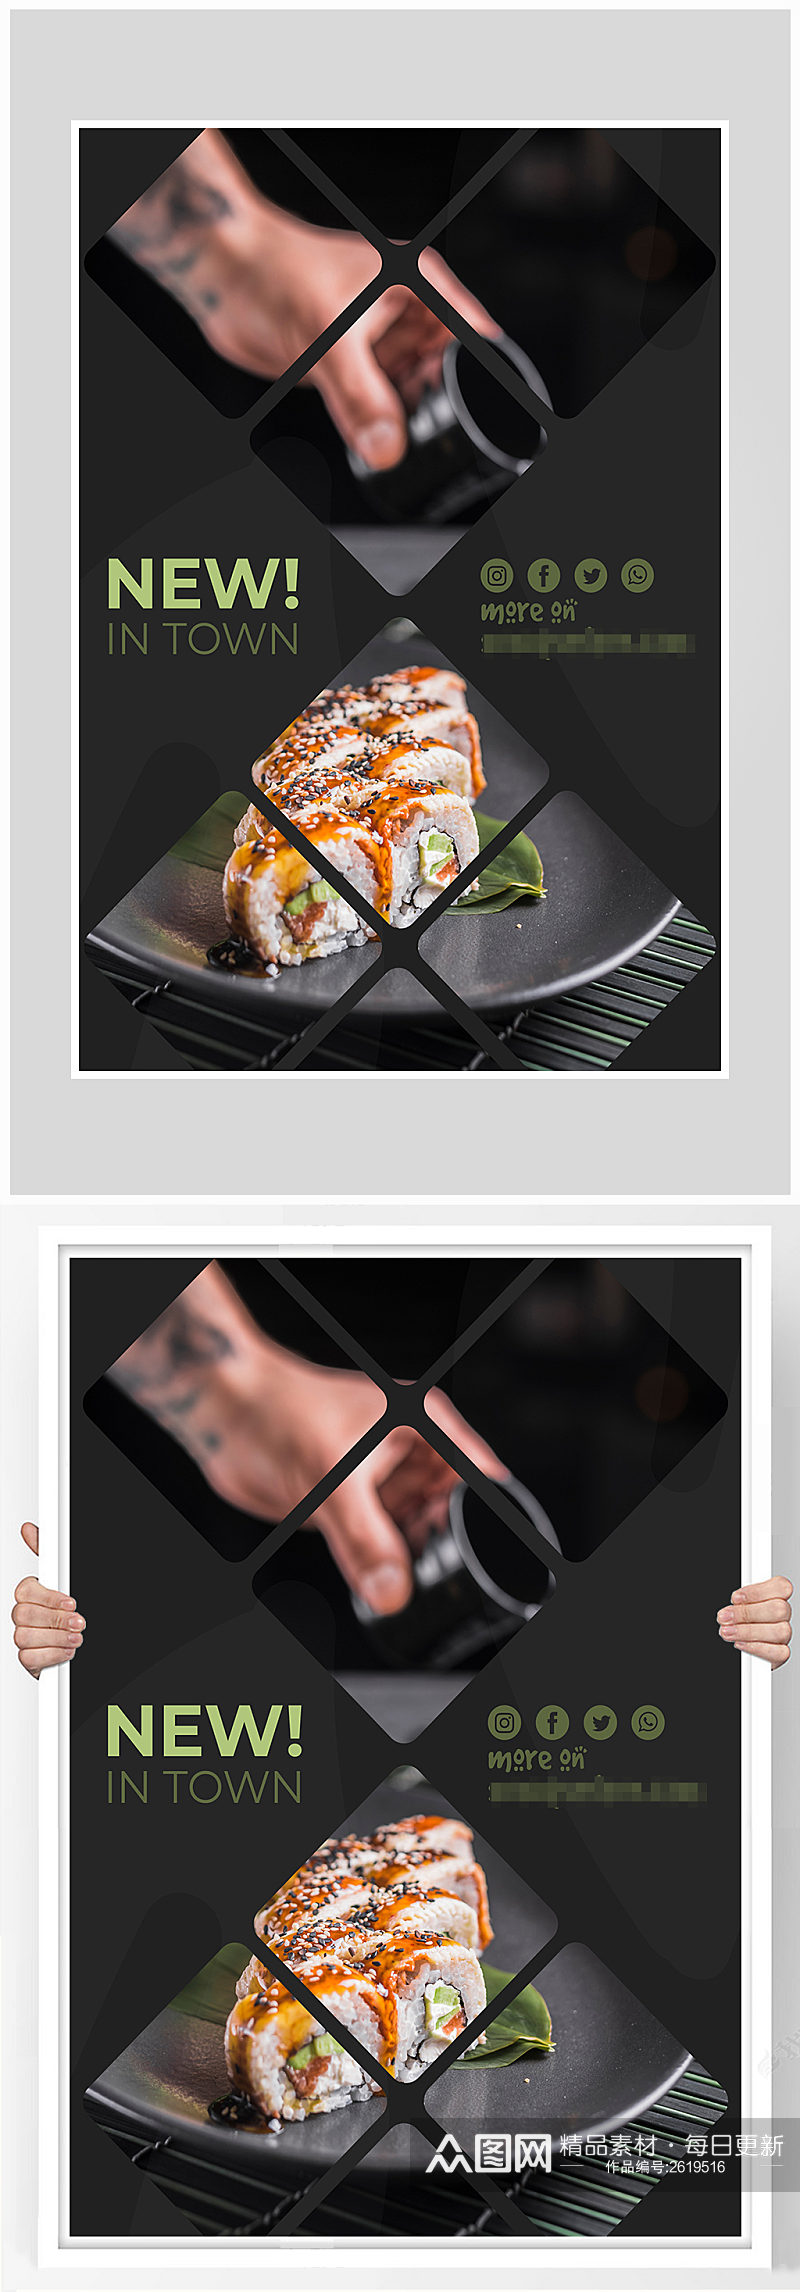 简约质感寿司美食海报设计素材